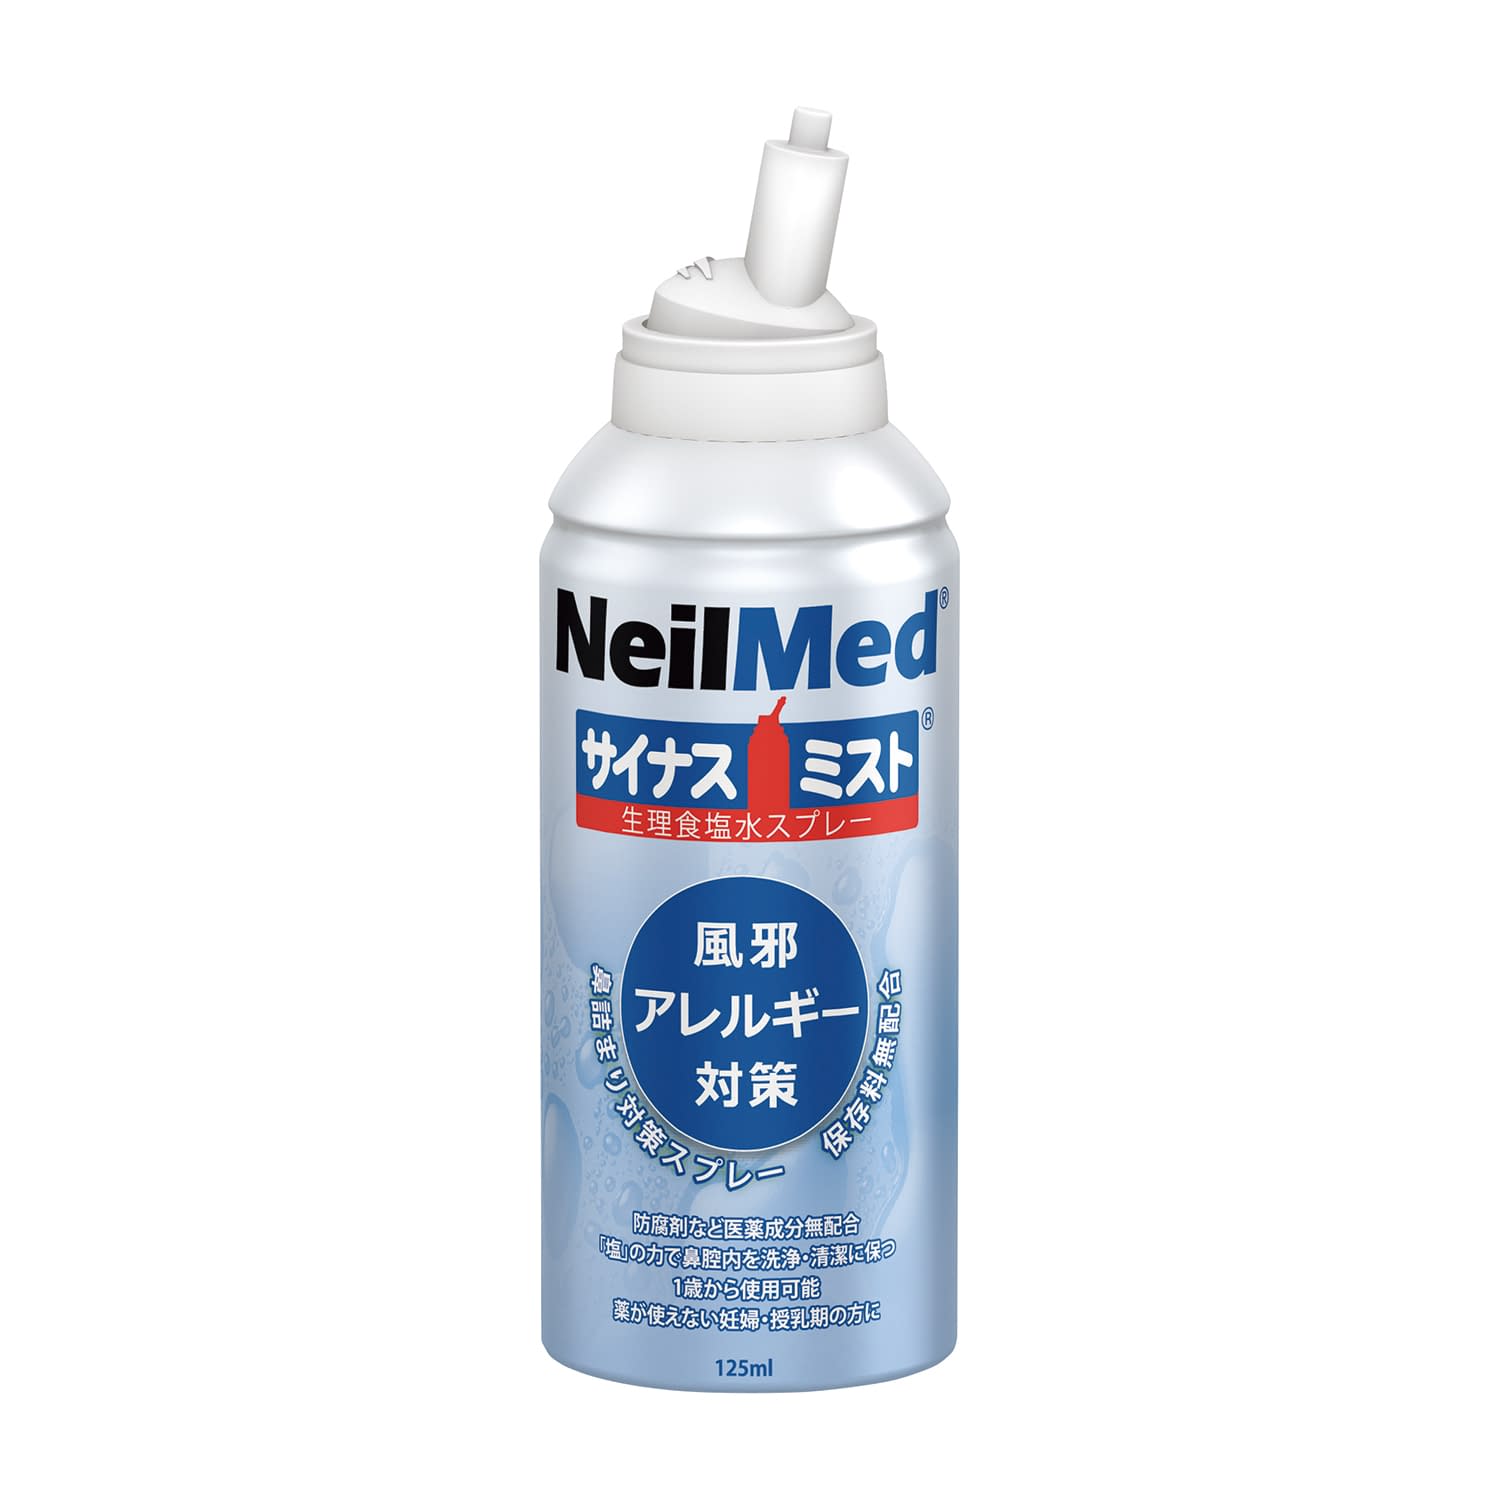 サイナスミスト サイナスミストニールメッドSM-125(125ML)●生理食塩水のミストを鼻腔内に噴霧し、鼻腔内を潤すことで、花粉、ごみ・チリ等を取り除きます。●乾燥・ムズムズなどのドライノーズ対策に、10マイクロンの細かい粒子で、鼻腔内を傷つけず、潤し、軽く鼻をかみましょう。●ボトルには、防腐剤、保存剤不使用の重曹を含んだ生理食塩水が125mlが入っています。●1歳から使用推奨。乳幼児、妊婦、授乳期の方々にも安心してご使用いただけます。●1回、0.5?1秒プッシュで400回ほど使用出来ます。薬事分類：クラス認証番号：13B3X10188000005